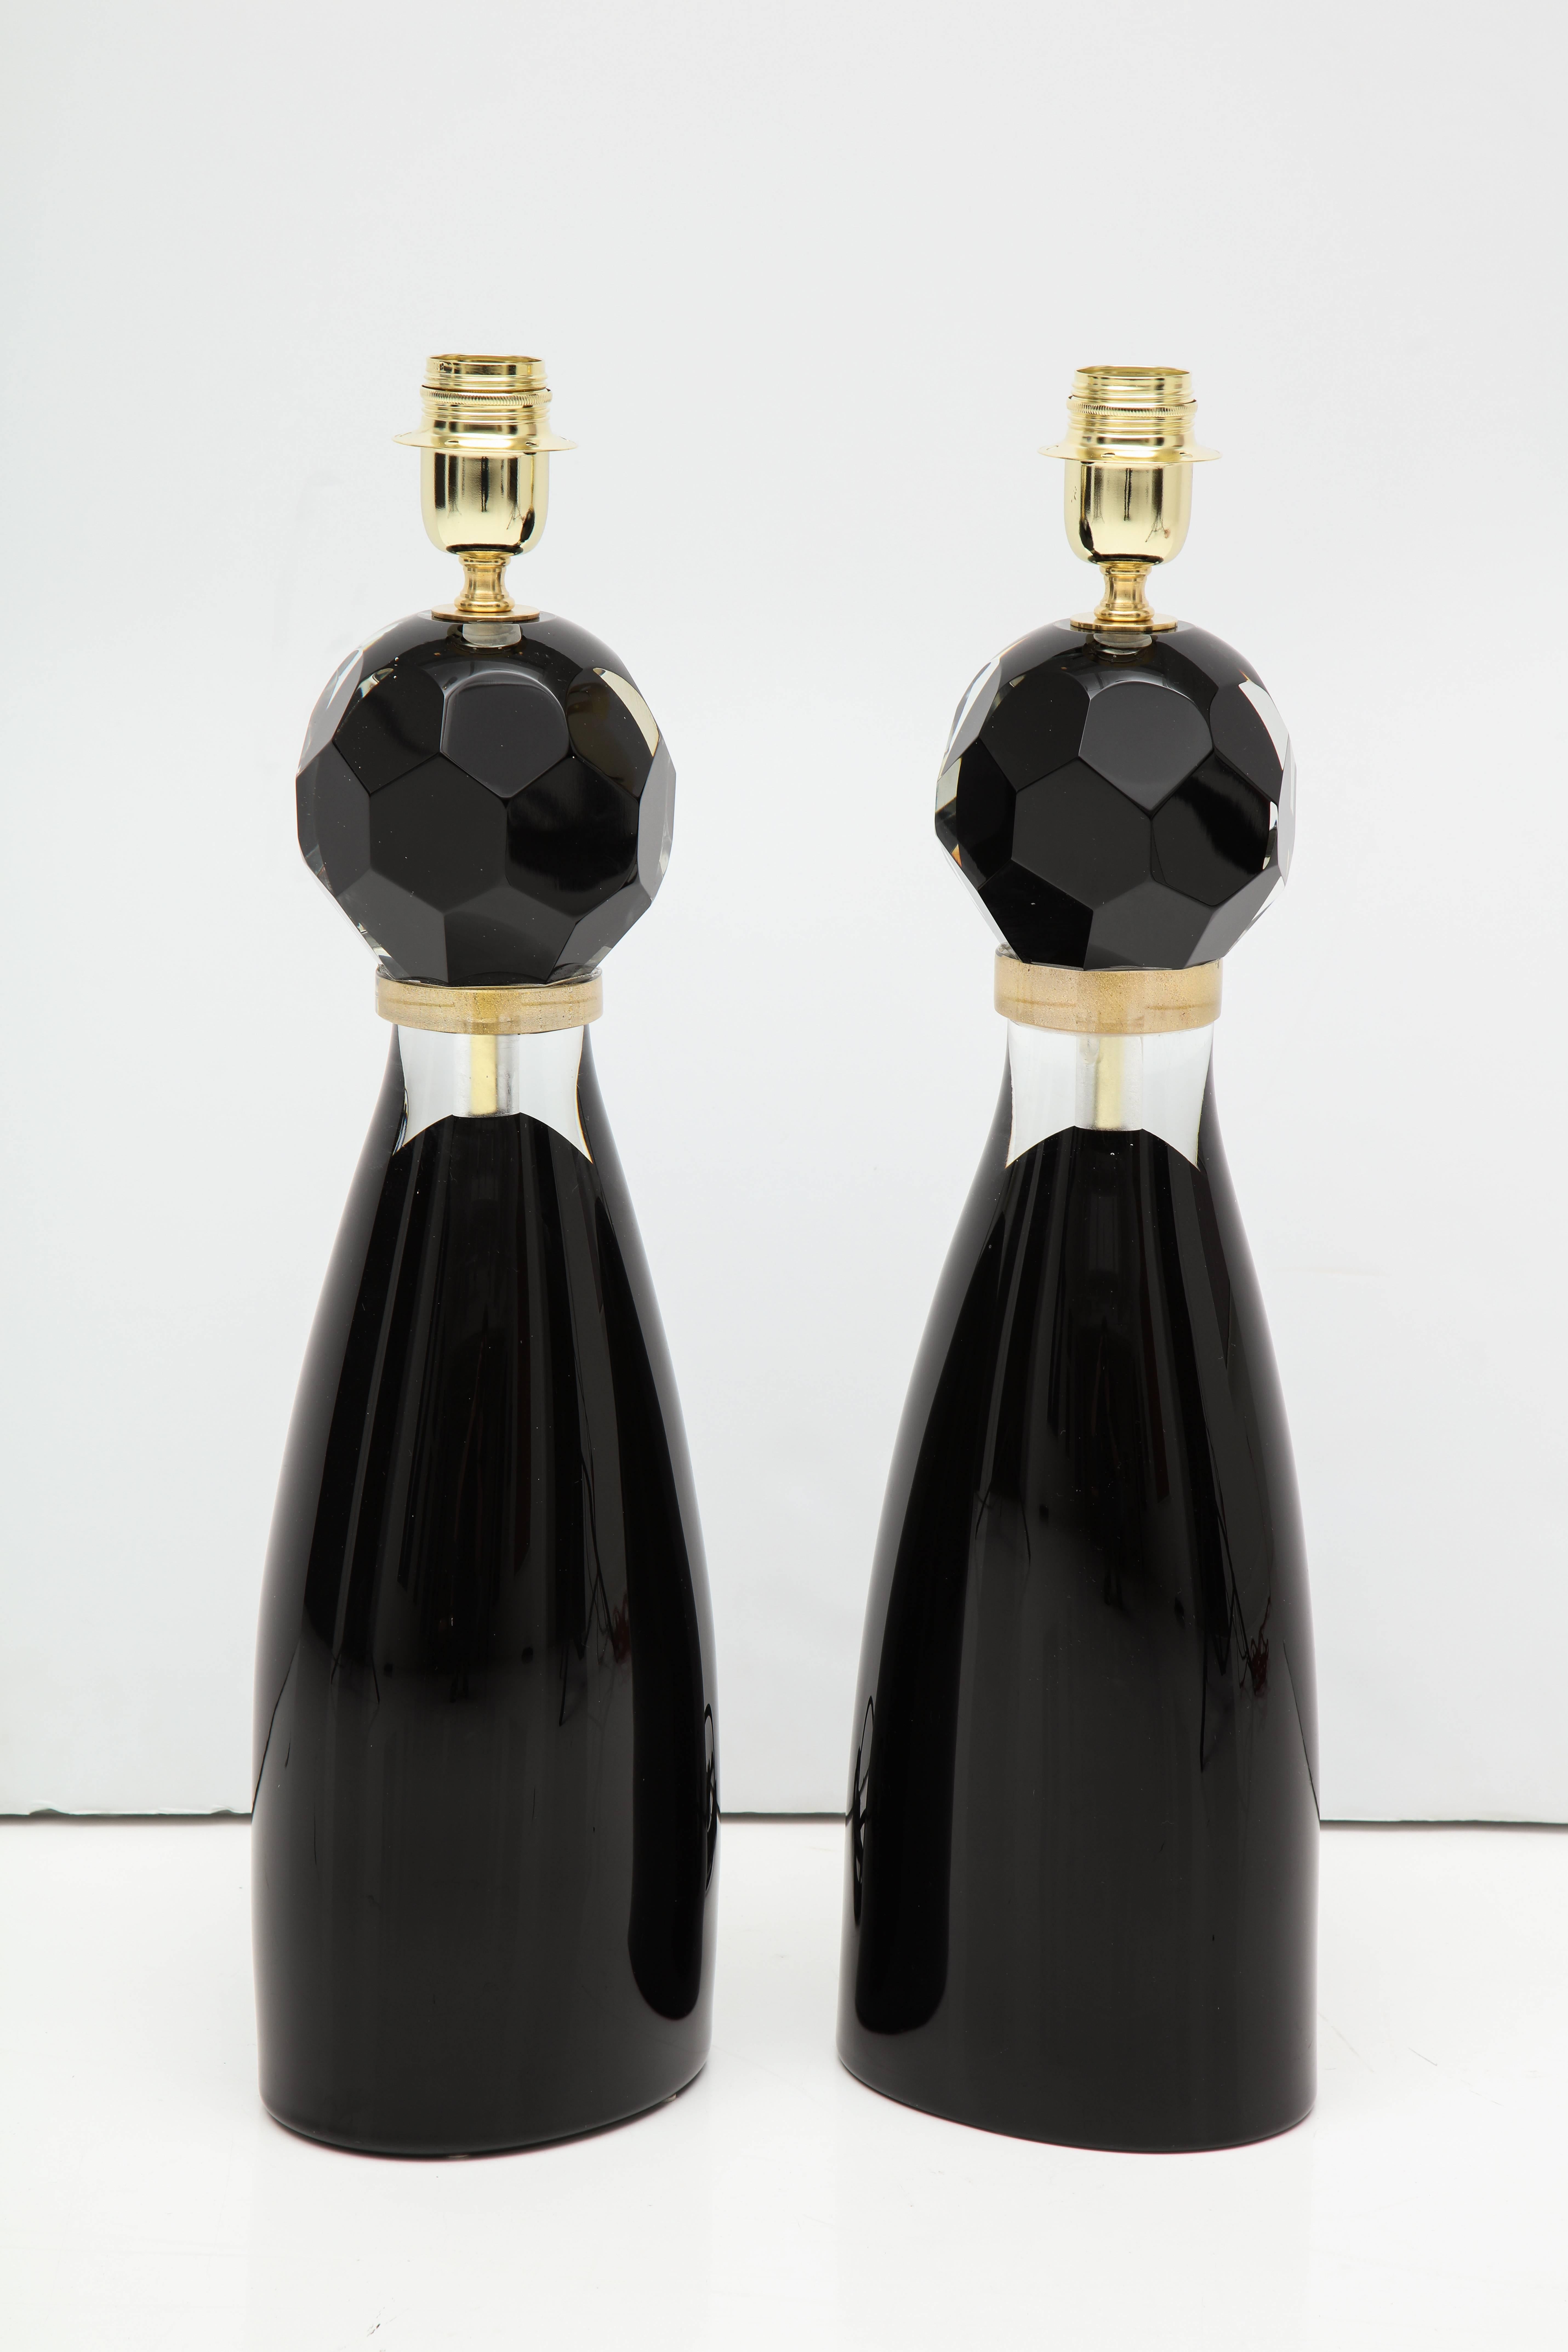 Paar italienische mundgeblasene Murano-Glas-Tischlampen, bestehend aus einer facettierten schwarzen Glaskugel auf einem modernen schwarzen und klaren Sockel. Ein goldener Glasring trennt die beiden Glaselemente. Signiert von Glasermeister Alberto